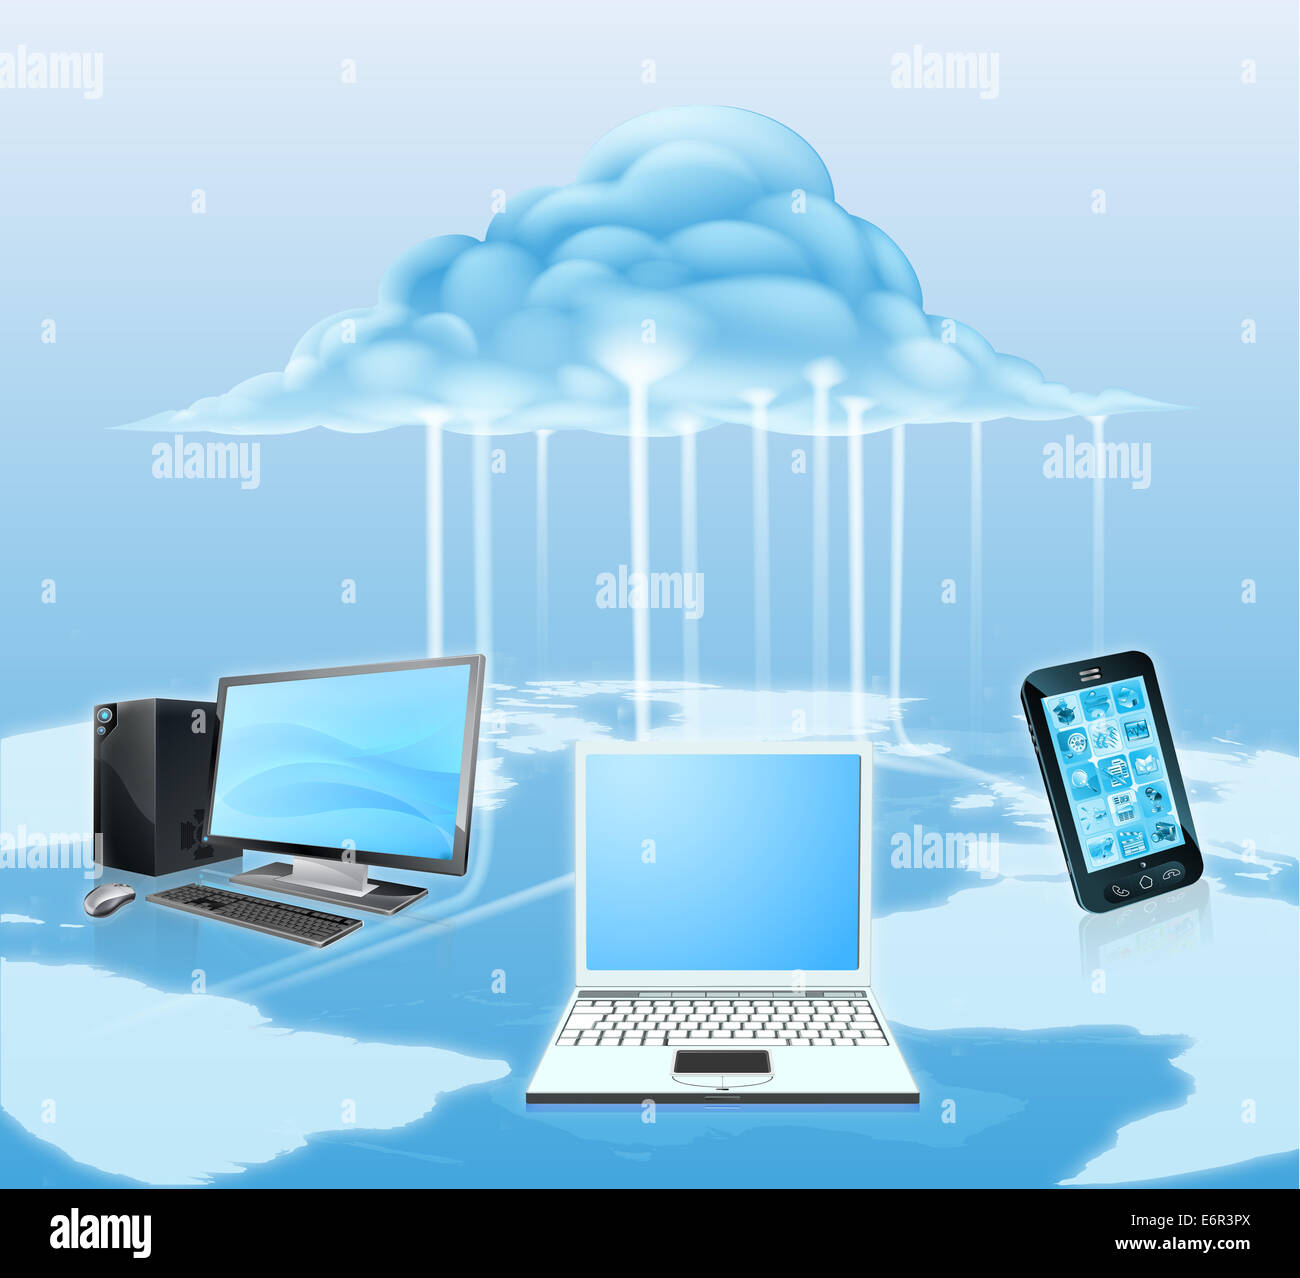 Ilustración de dispositivos multimedia como el teléfono móvil, el portátil y el ordenador de sobremesa conectado a la nube. El concepto de la tecnología Foto de stock